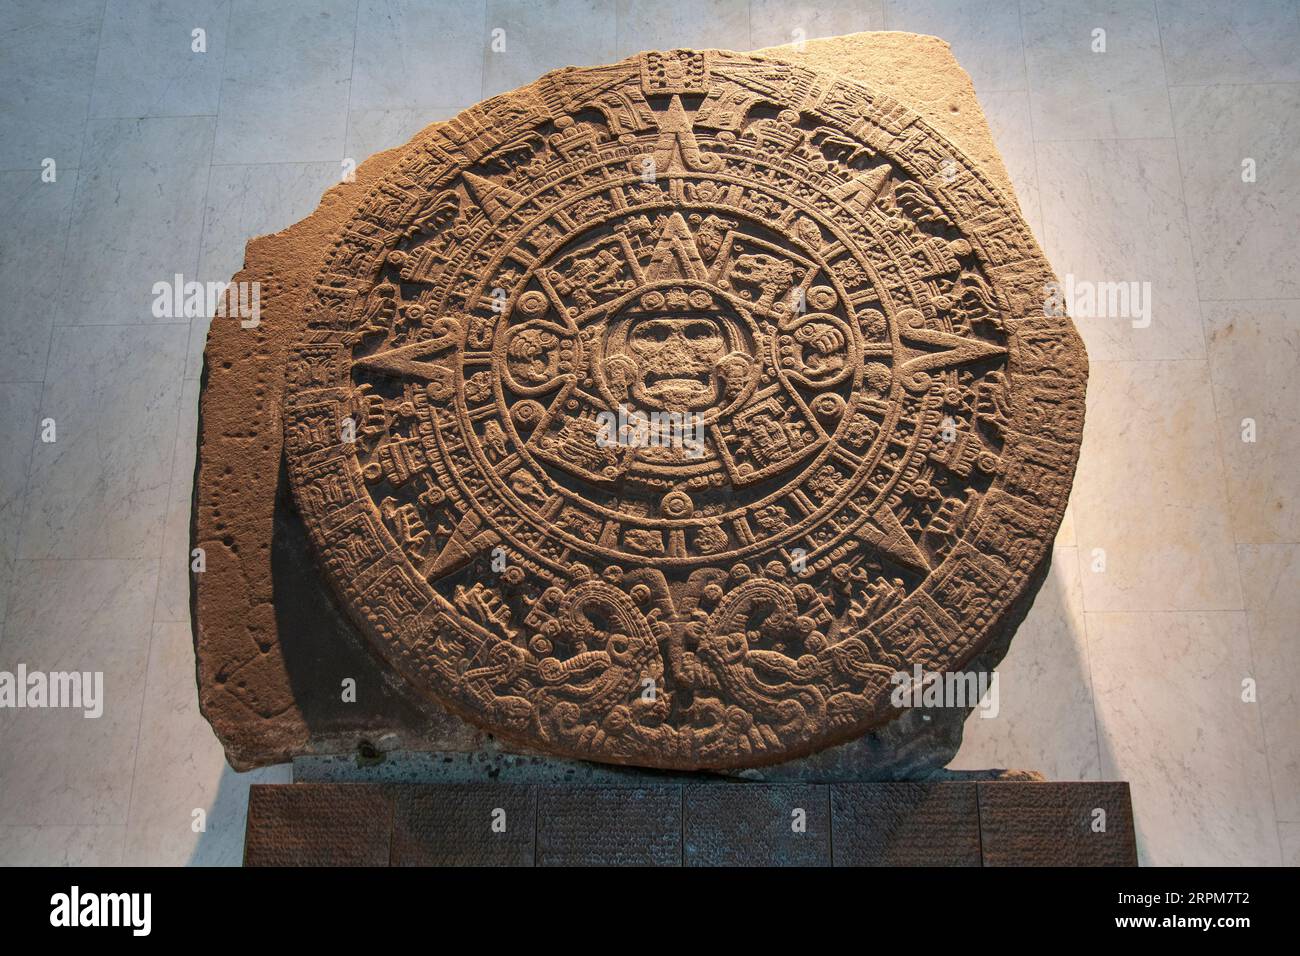 Stone of the Sun Sculpture at Museo Nacional de Antropología in Mexico City, Mexico Stock Photo